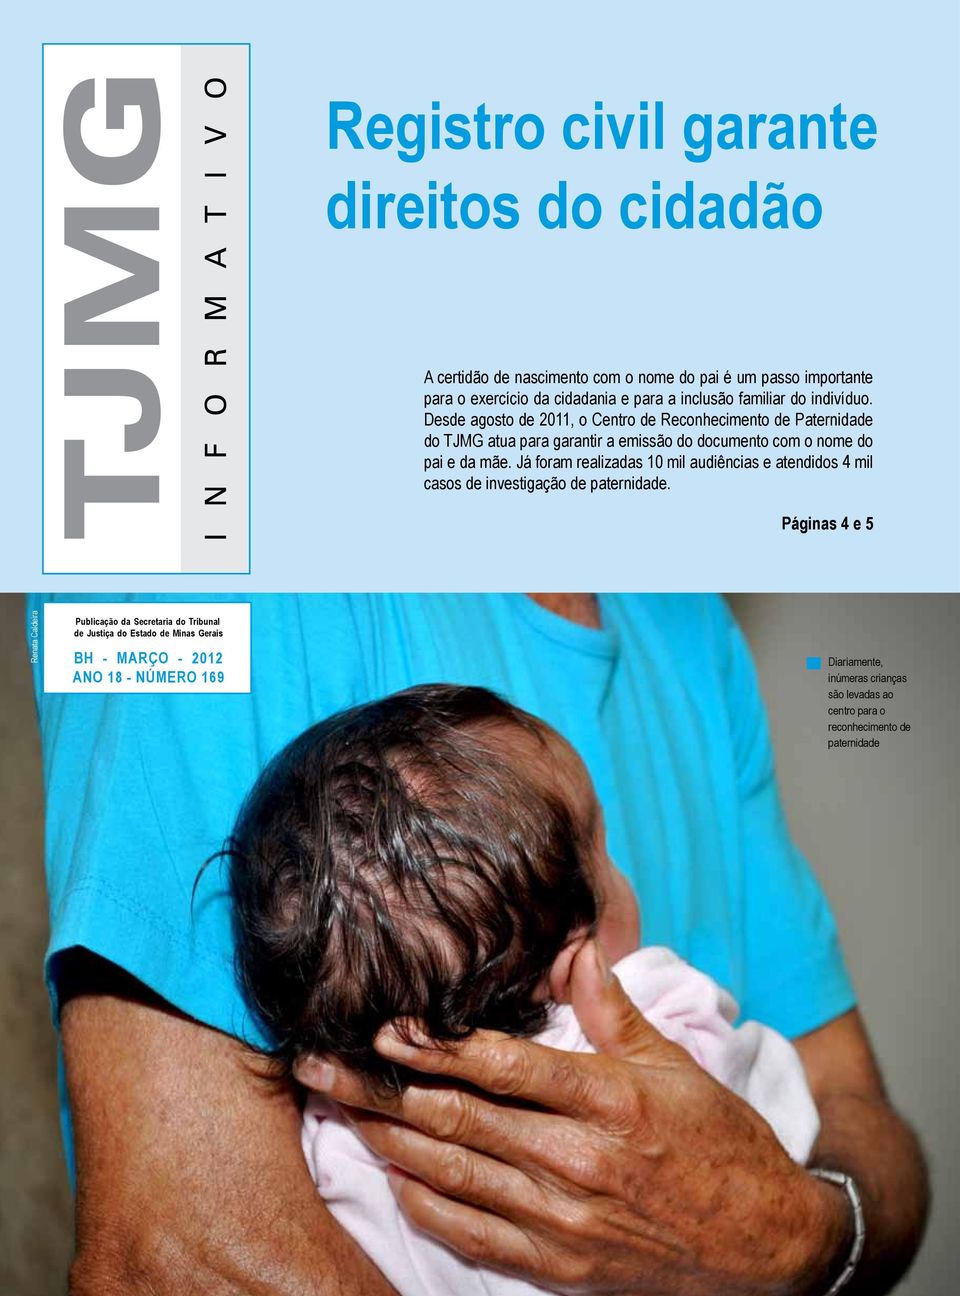 Desde agosto de 2011, o Centro de Reconhecimento de Paternidade do TJMG atua para garantir a emissão do documento com o nome do pai e da mãe.